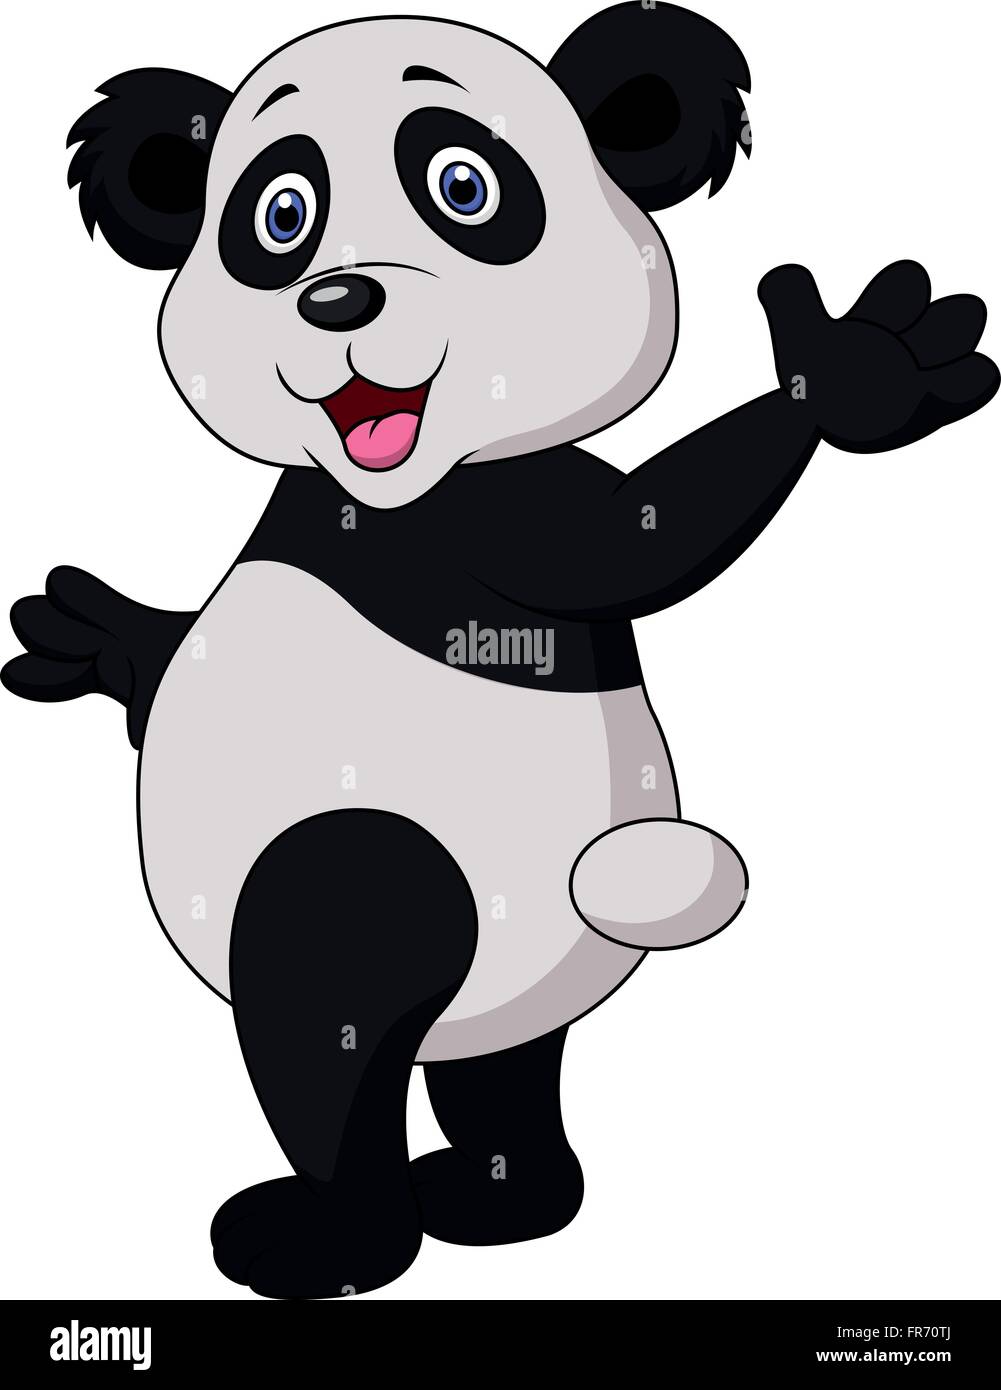 Cute panda cartoon waving hand Stock Vector Image & Art - Alamy